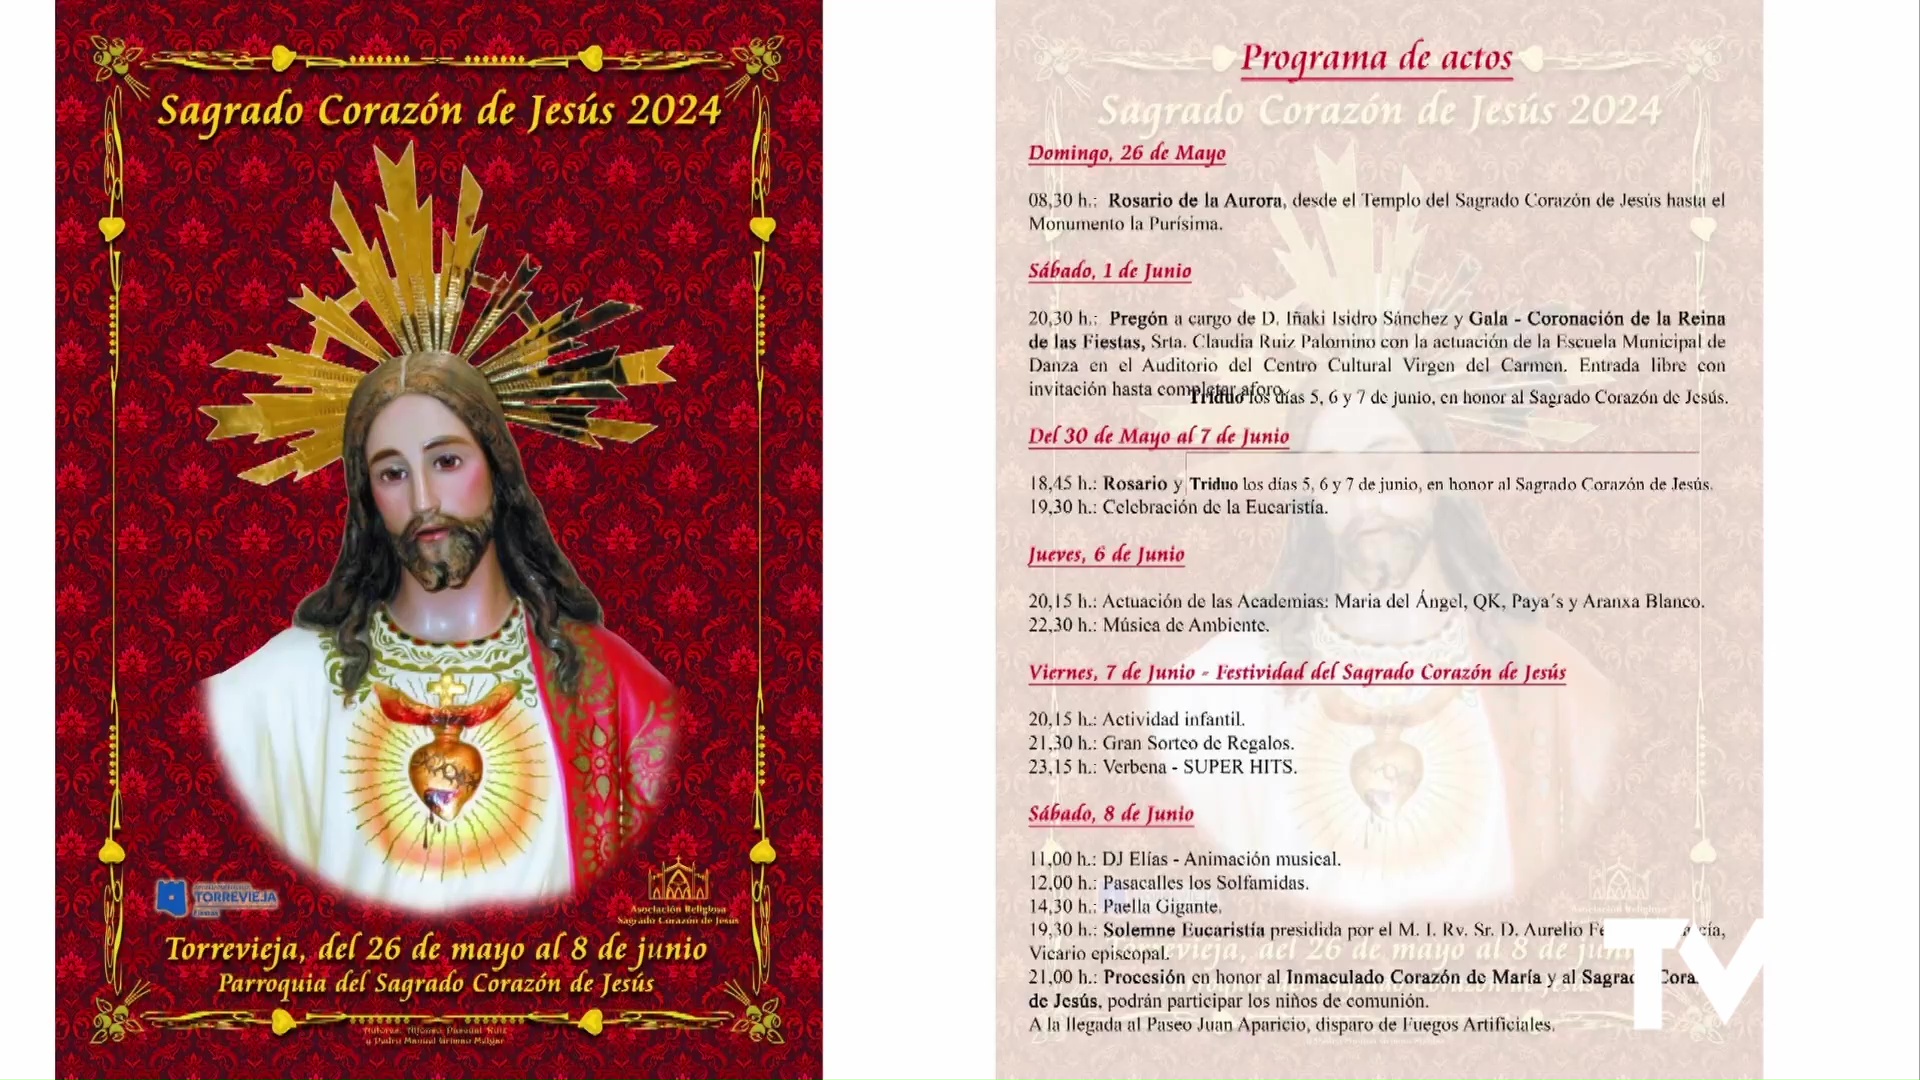 Imagen de Iñaki Isidro pregonará las Fiestas del Sagrado Corazón de Jesús